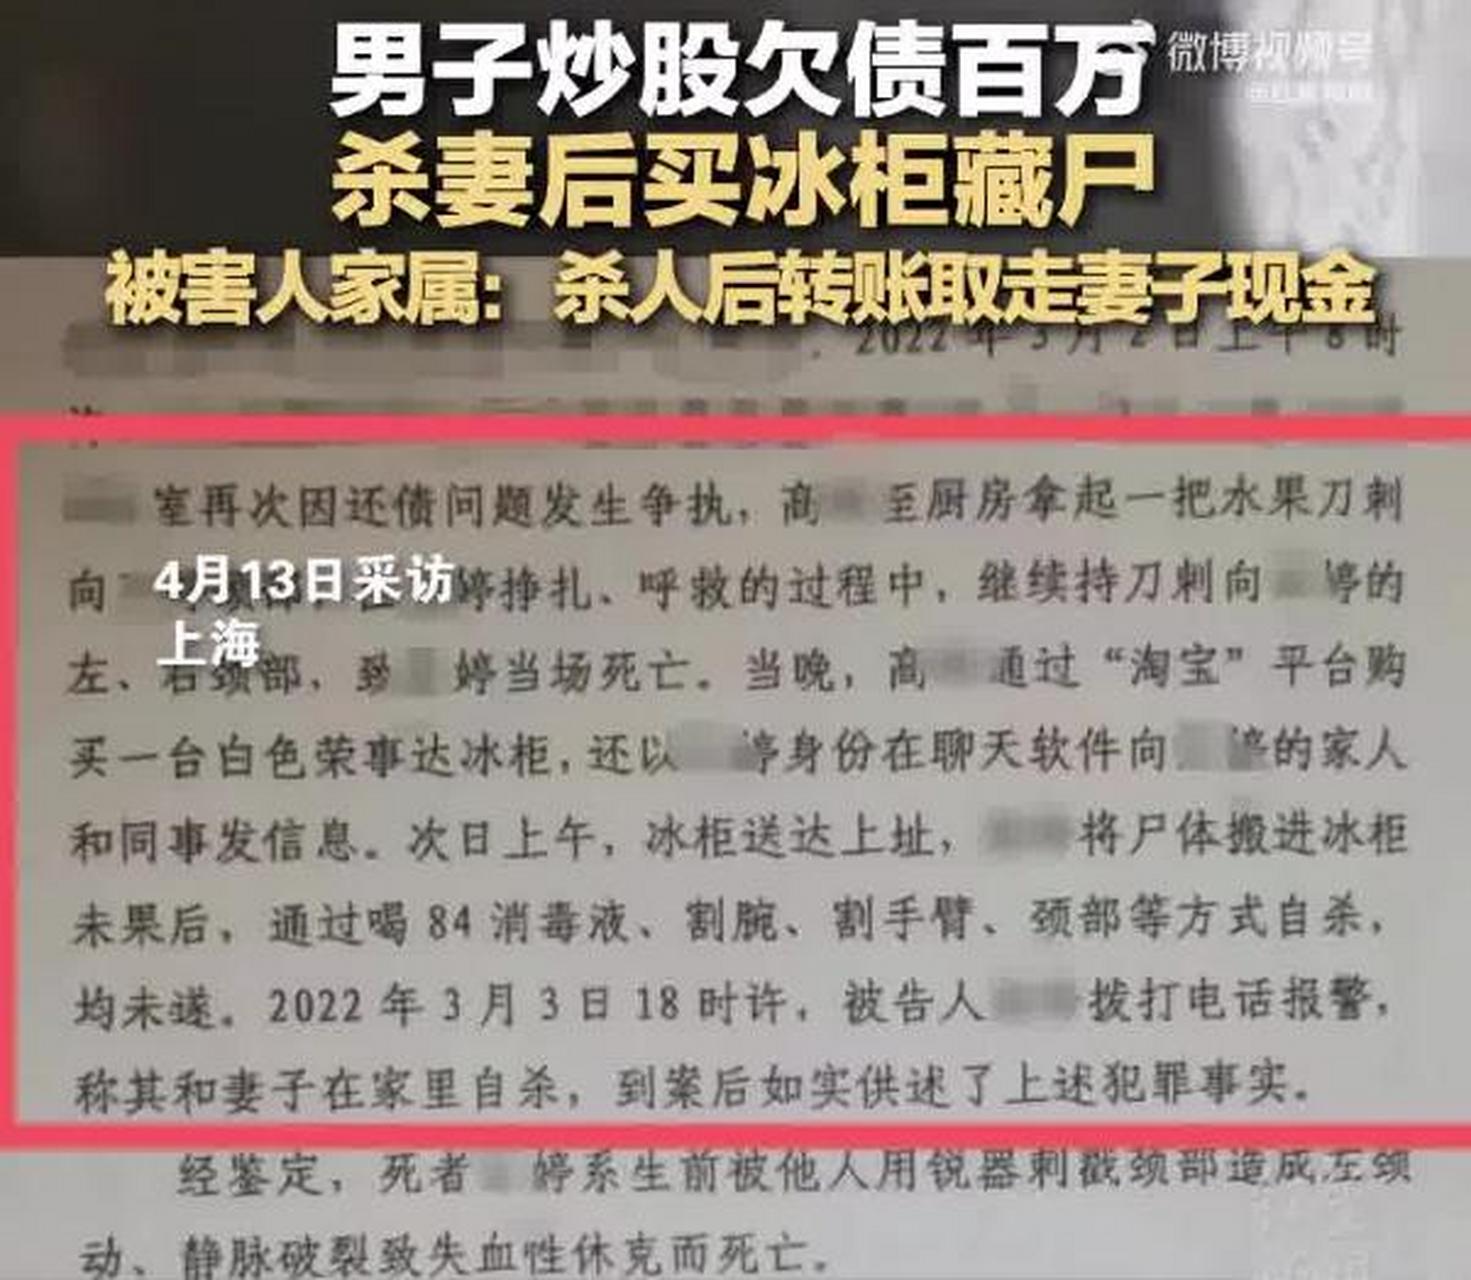 上海男子高某杀妻藏尸冰柜案于4月12日在上海市第一中级人民法院